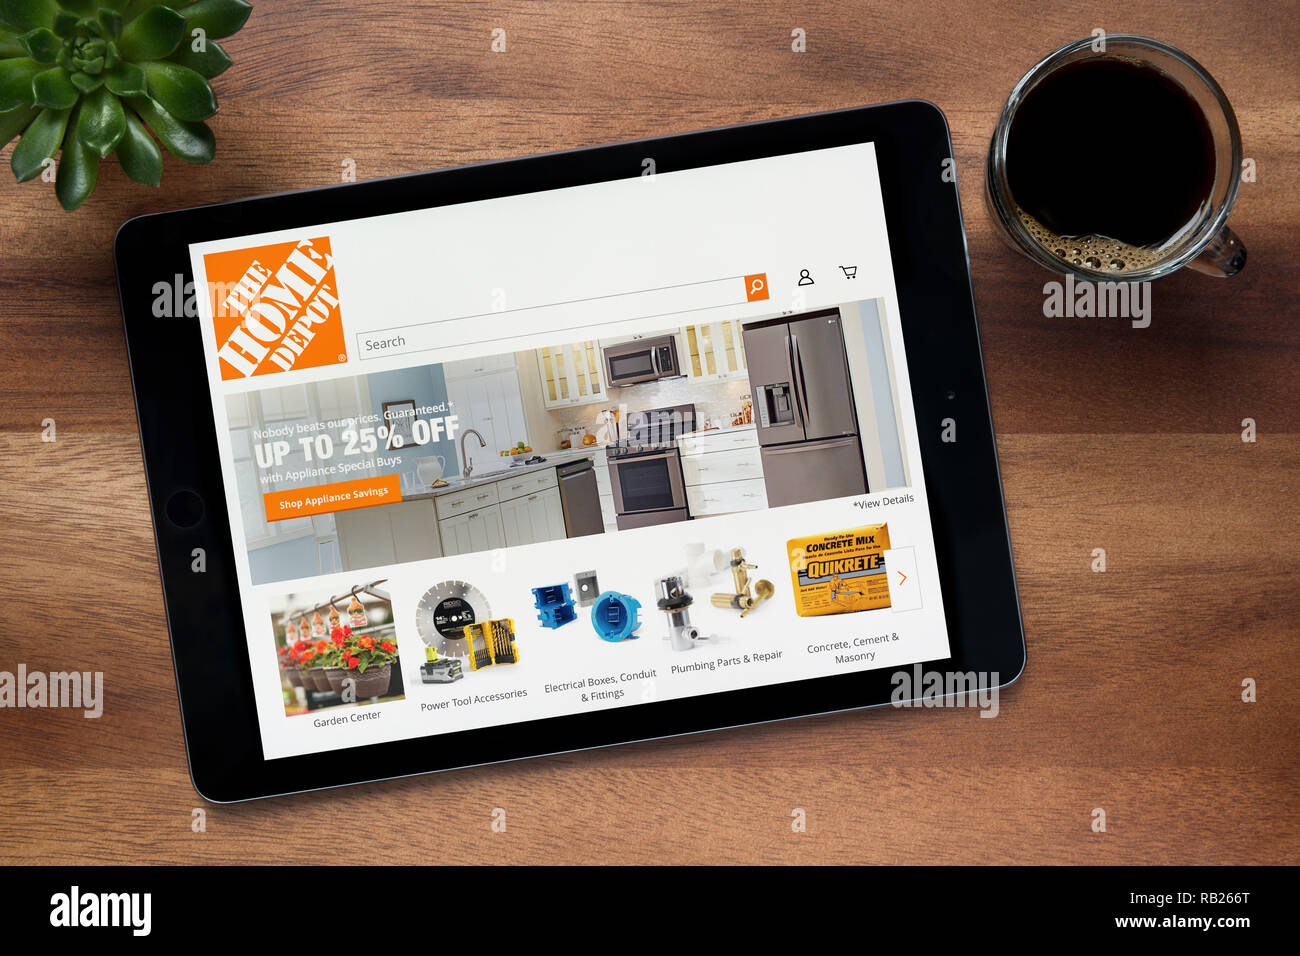 Le site web de Home Depot est vu sur un iPad tablet, sur une table en bois avec une machine à expresso et d'une plante (usage éditorial uniquement). Banque D'Images